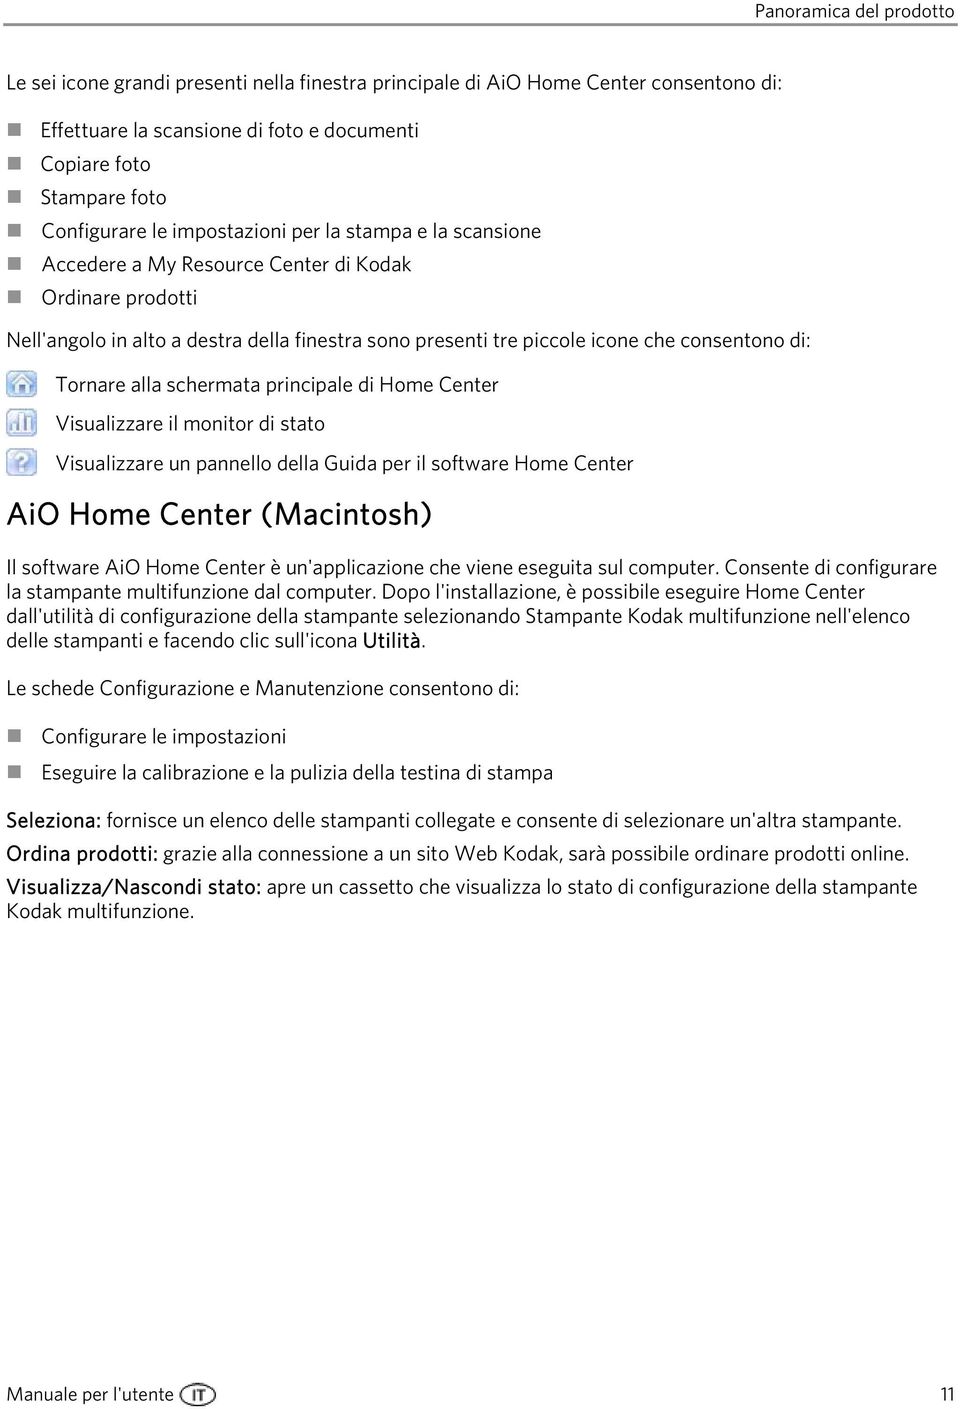 Tornare alla schermata principale di Home Center Visualizzare il monitor di stato Visualizzare un pannello della Guida per il software Home Center AiO Home Center (Macintosh) Il software AiO Home